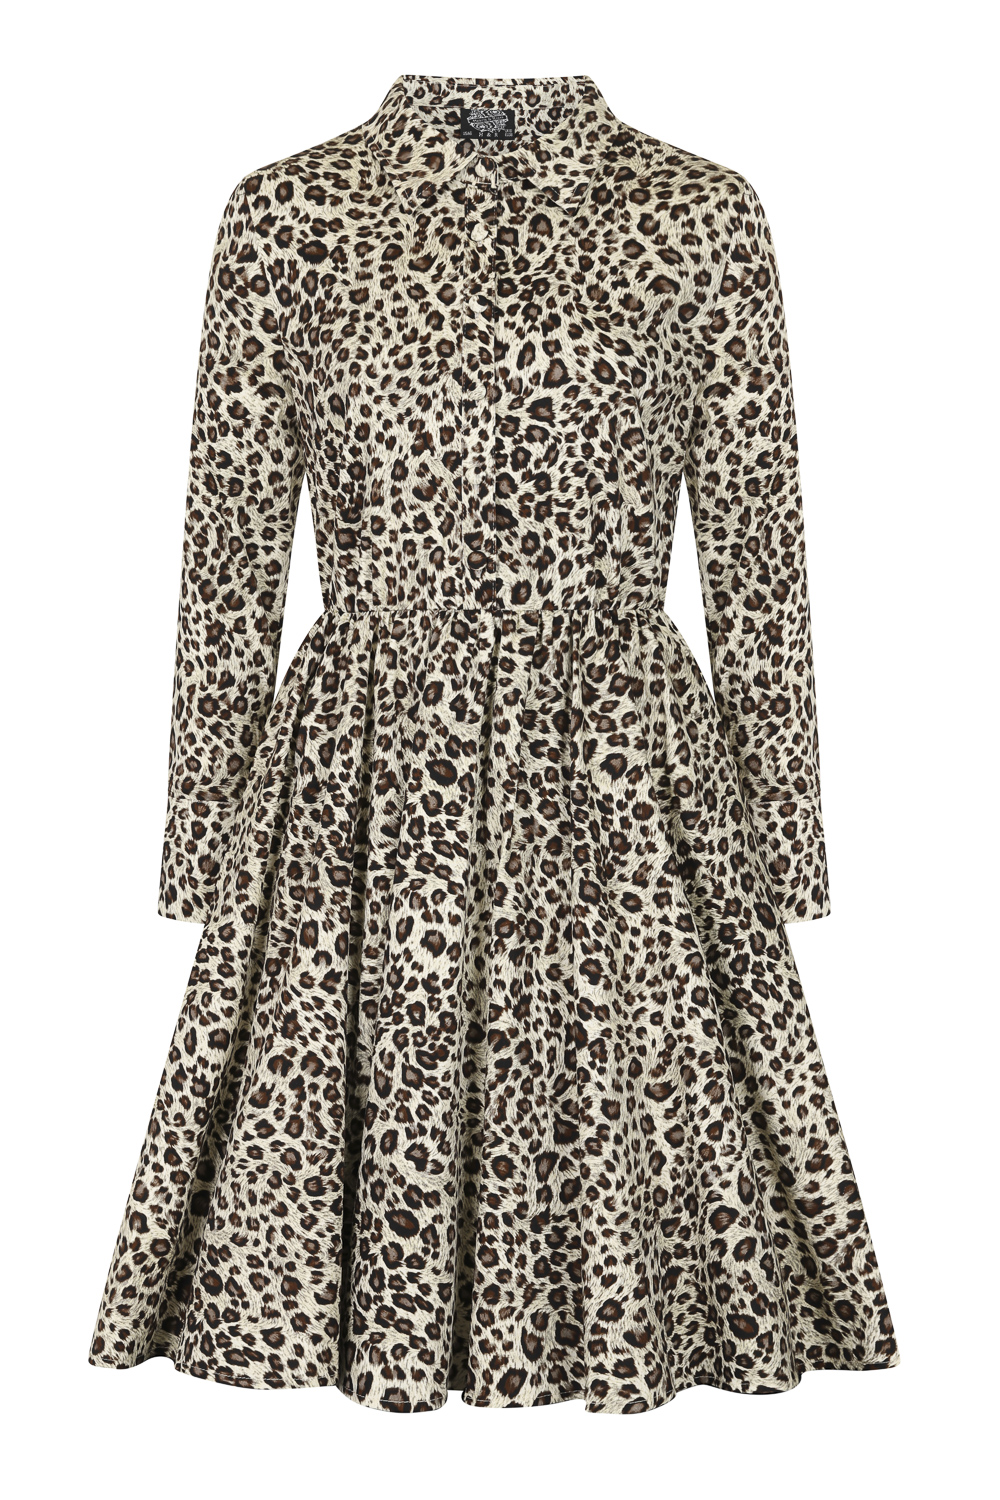 Lena Leopard Swing Dress in Leopard - Hearts & Roses London